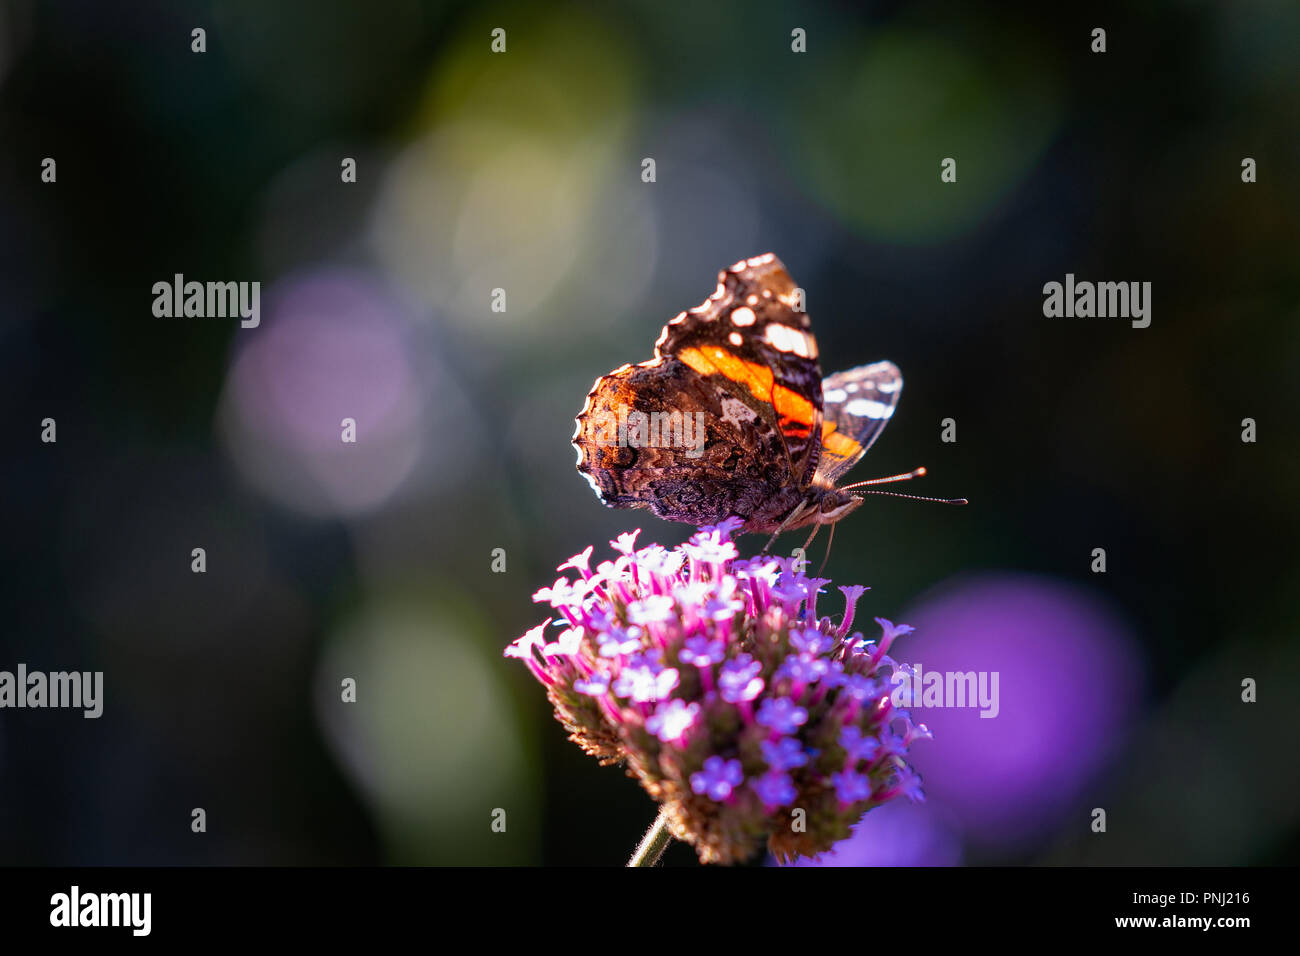 Distelfalter - Vanessa cardui-Schmetterling auf einem violetten Eisenkraut Blüte. Glatten dunklen Hintergrund. Positive Sommer Szene. Freier Platz für die Eingabe von Text Stockfoto